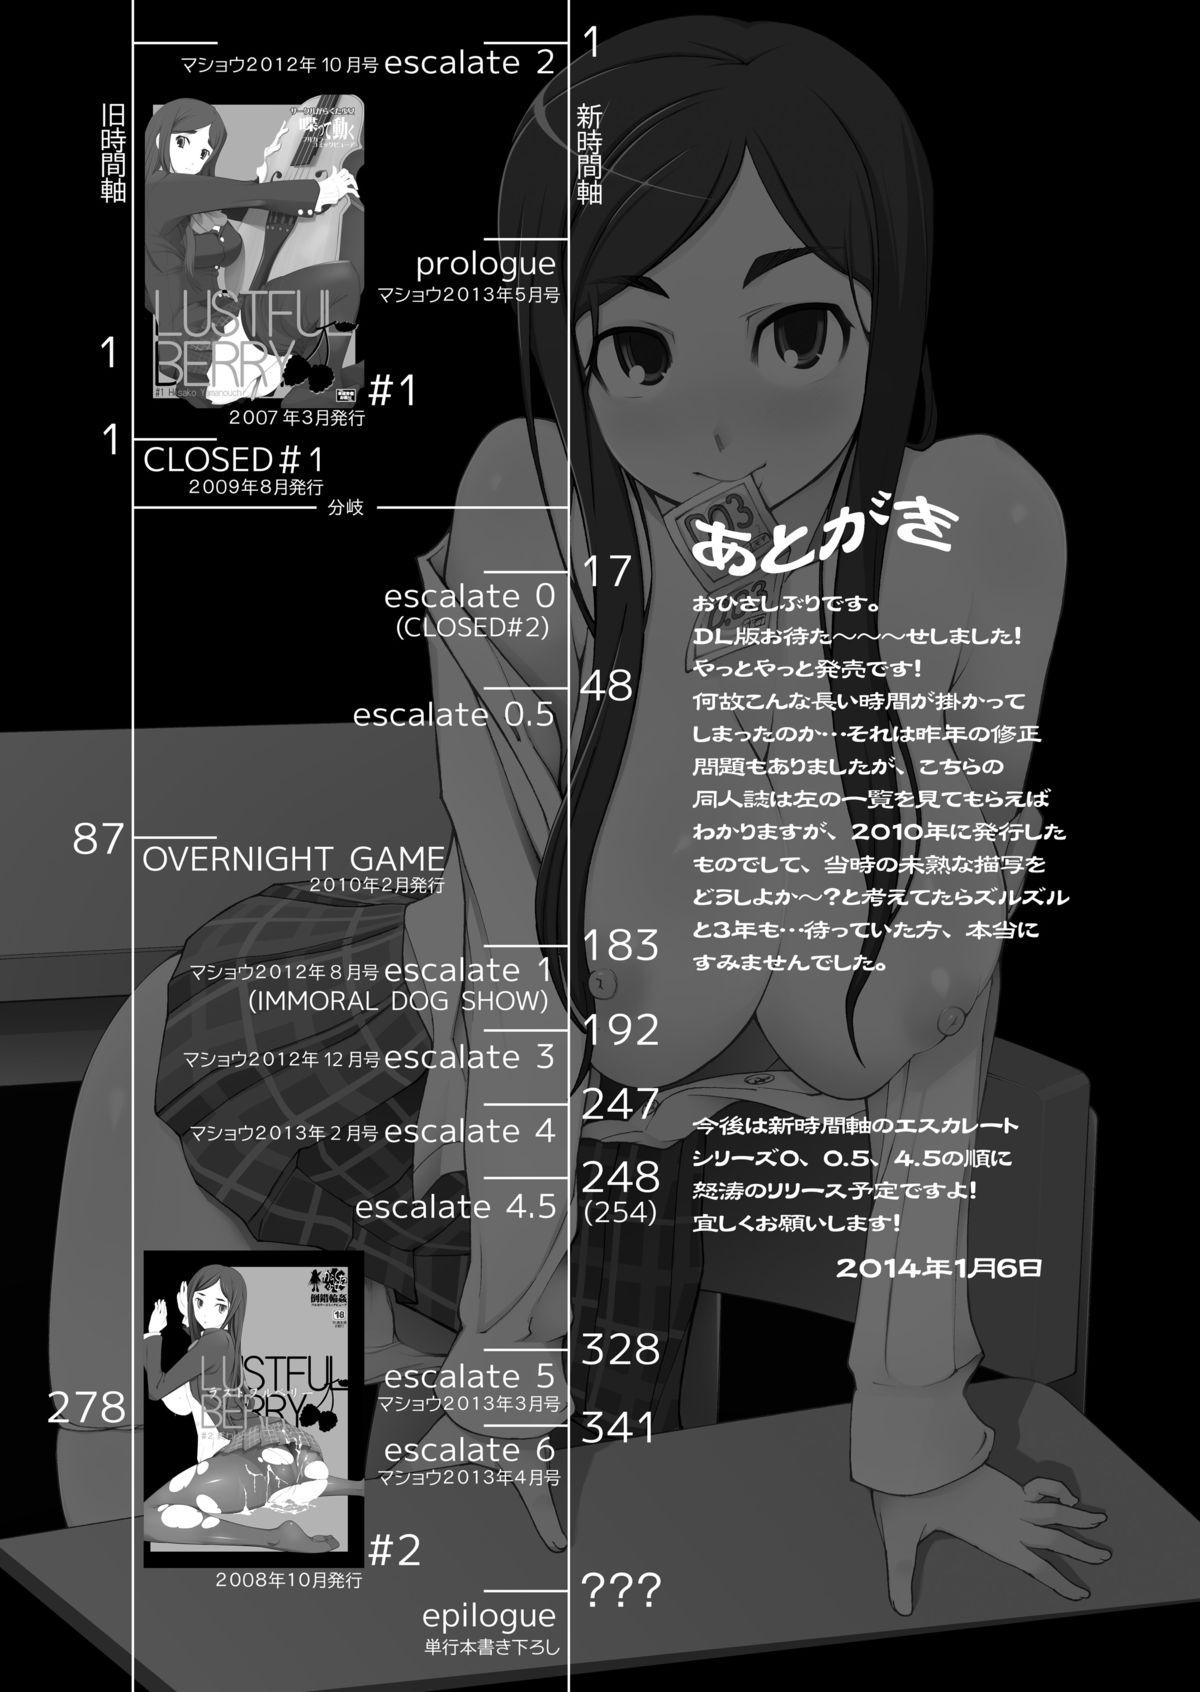 LUSTFUL BERRY OVERNIGHT GAME Ore no Shiranai Basho de, Akegata Made Moteasobareta Kanojo. 36